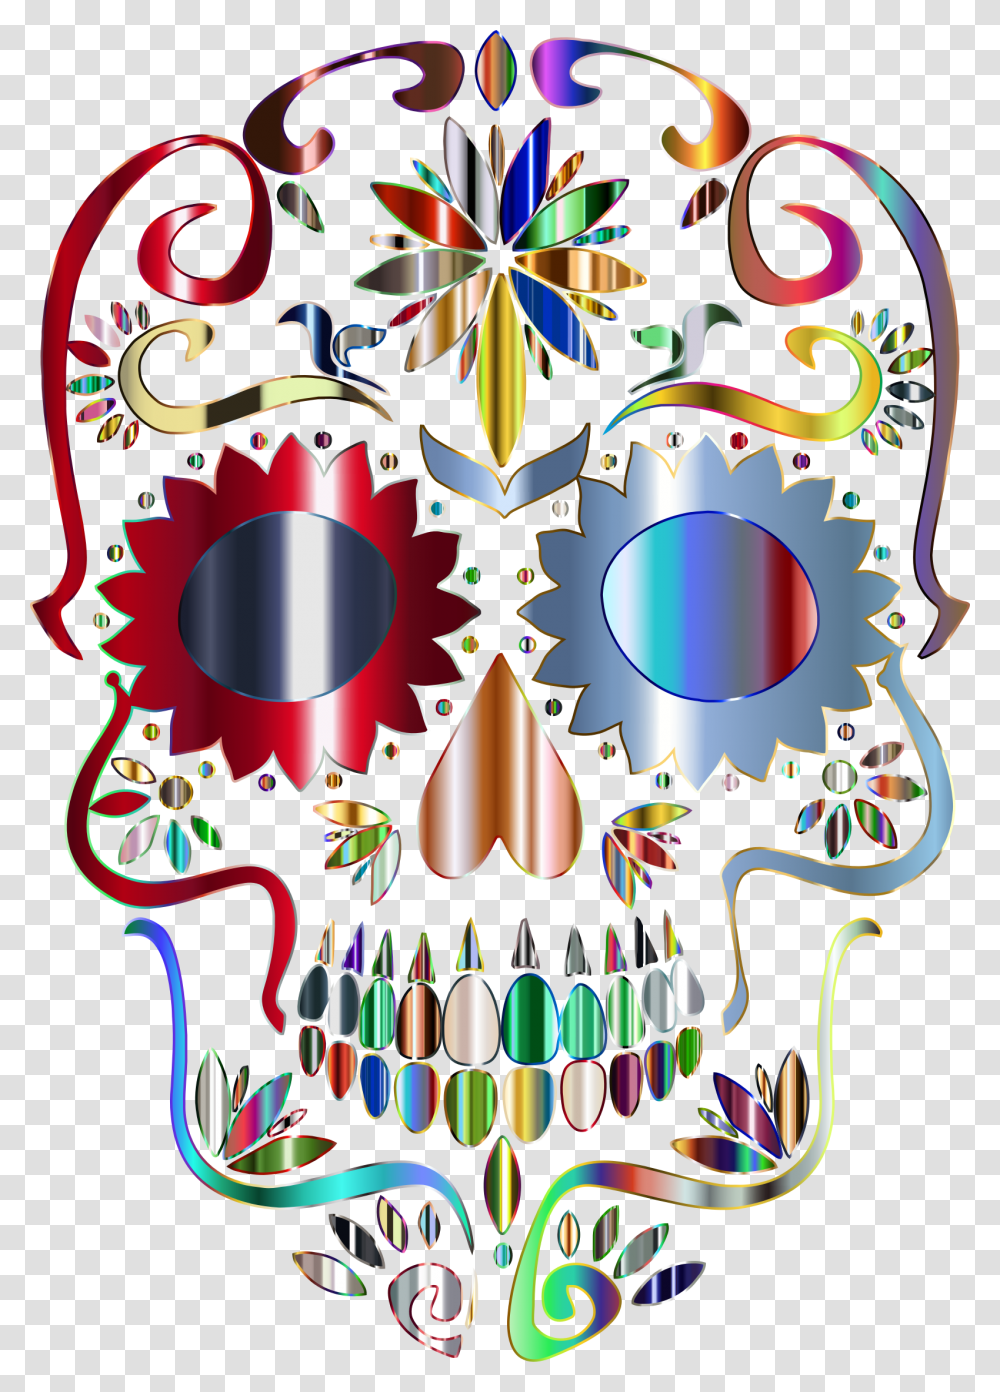 Background Skull Icon, Pattern, Floral Design Transparent Png